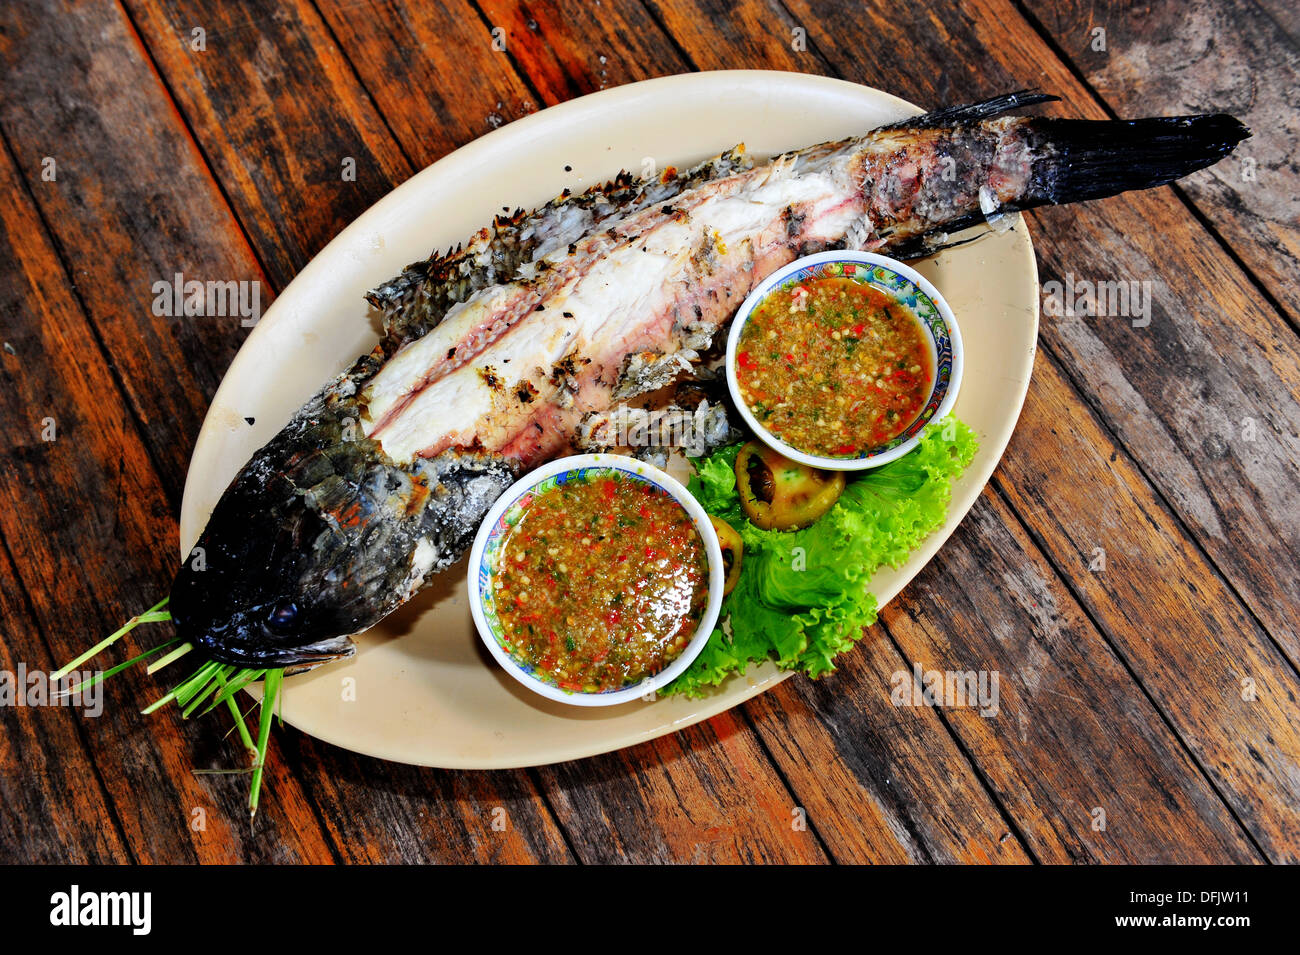 gosto-da-tailandia-grelhados-de-peixe-de-cabeca-de-cobra-com-molho-de-pimenta-tailandesa-dfjw11.jpg